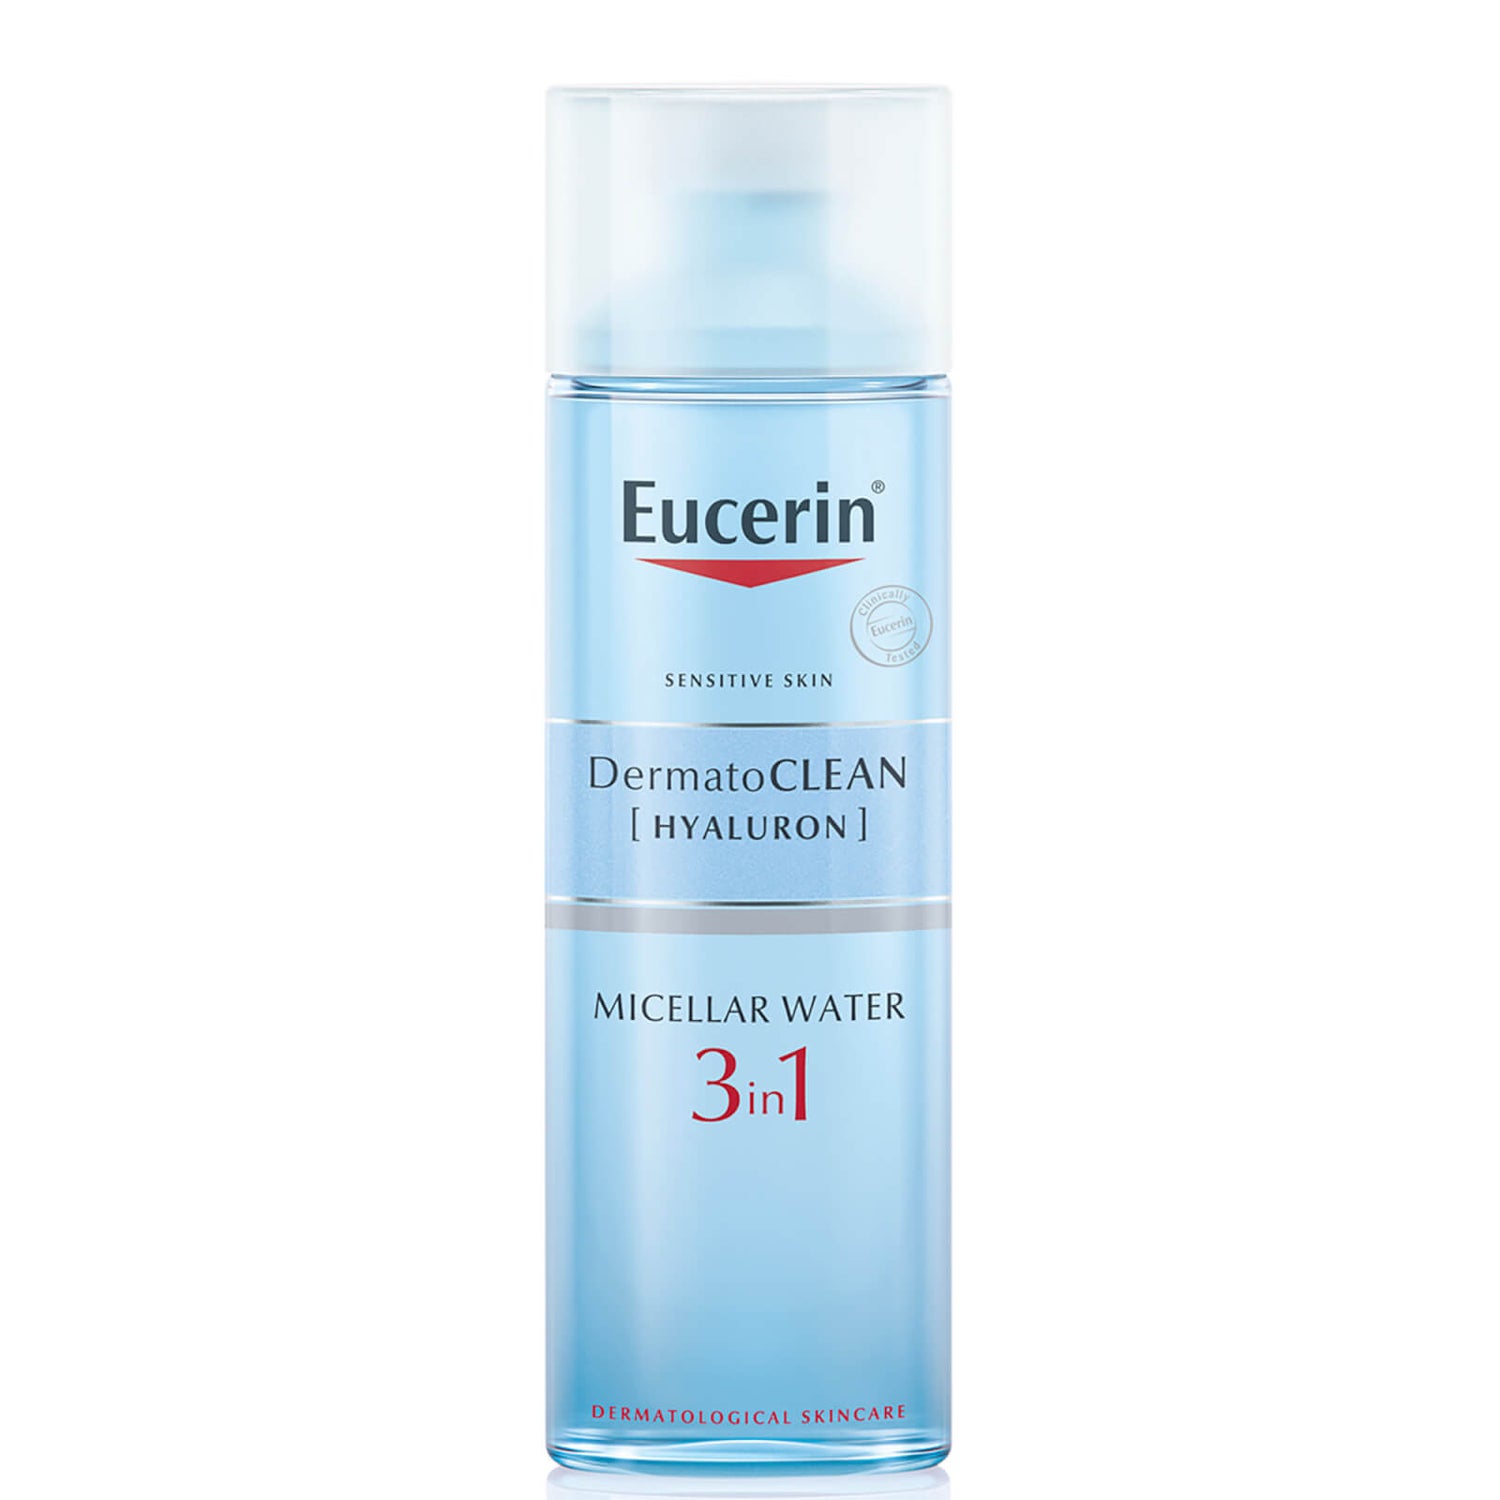 Eucerin® DermatoCLEAN 3-in-1 Mizellenwasser (200ml)